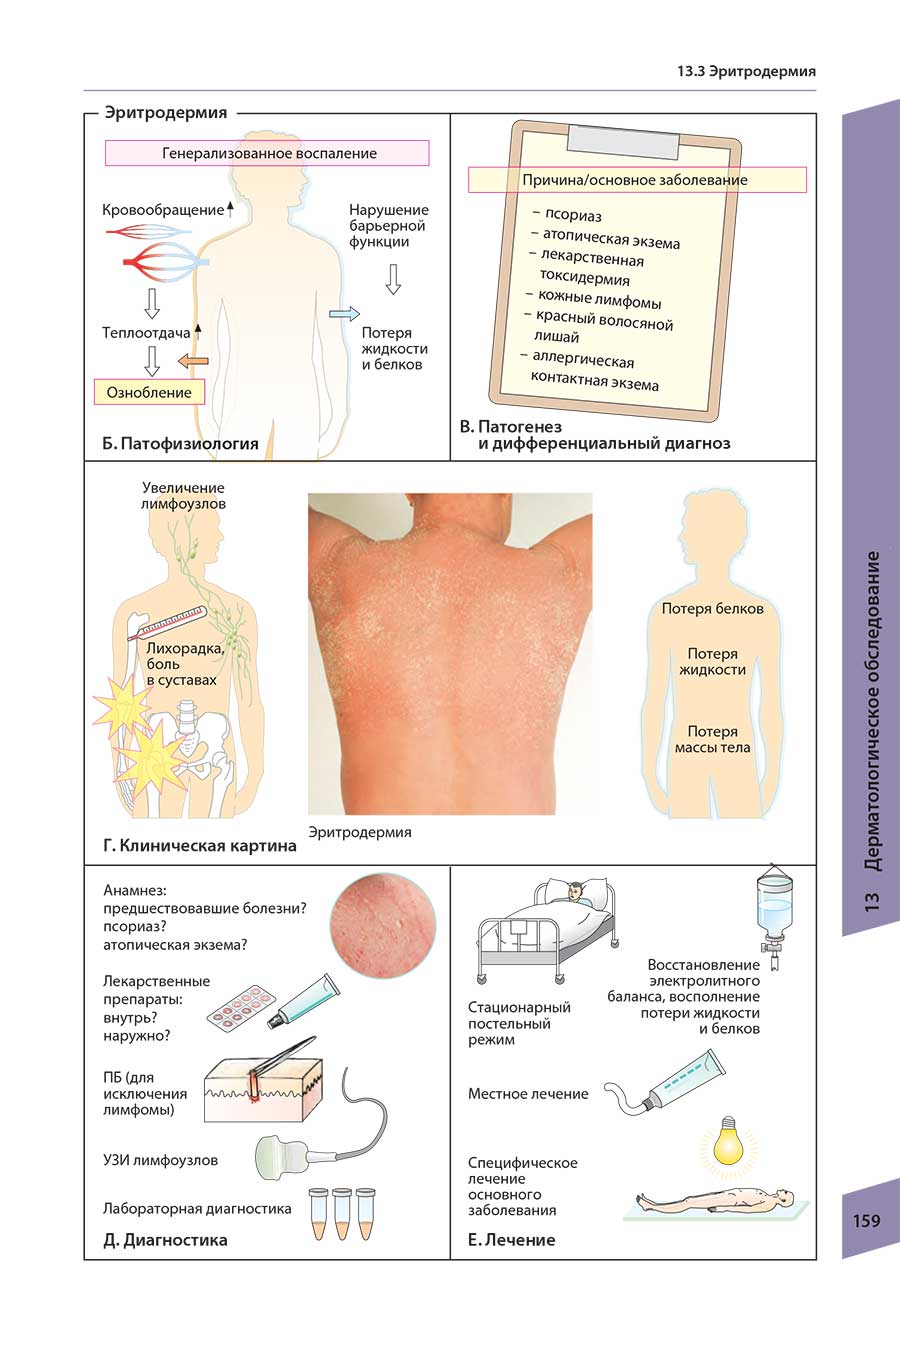 Пример страницы из книги "Атлас по дерматологии" - Рёкен М.